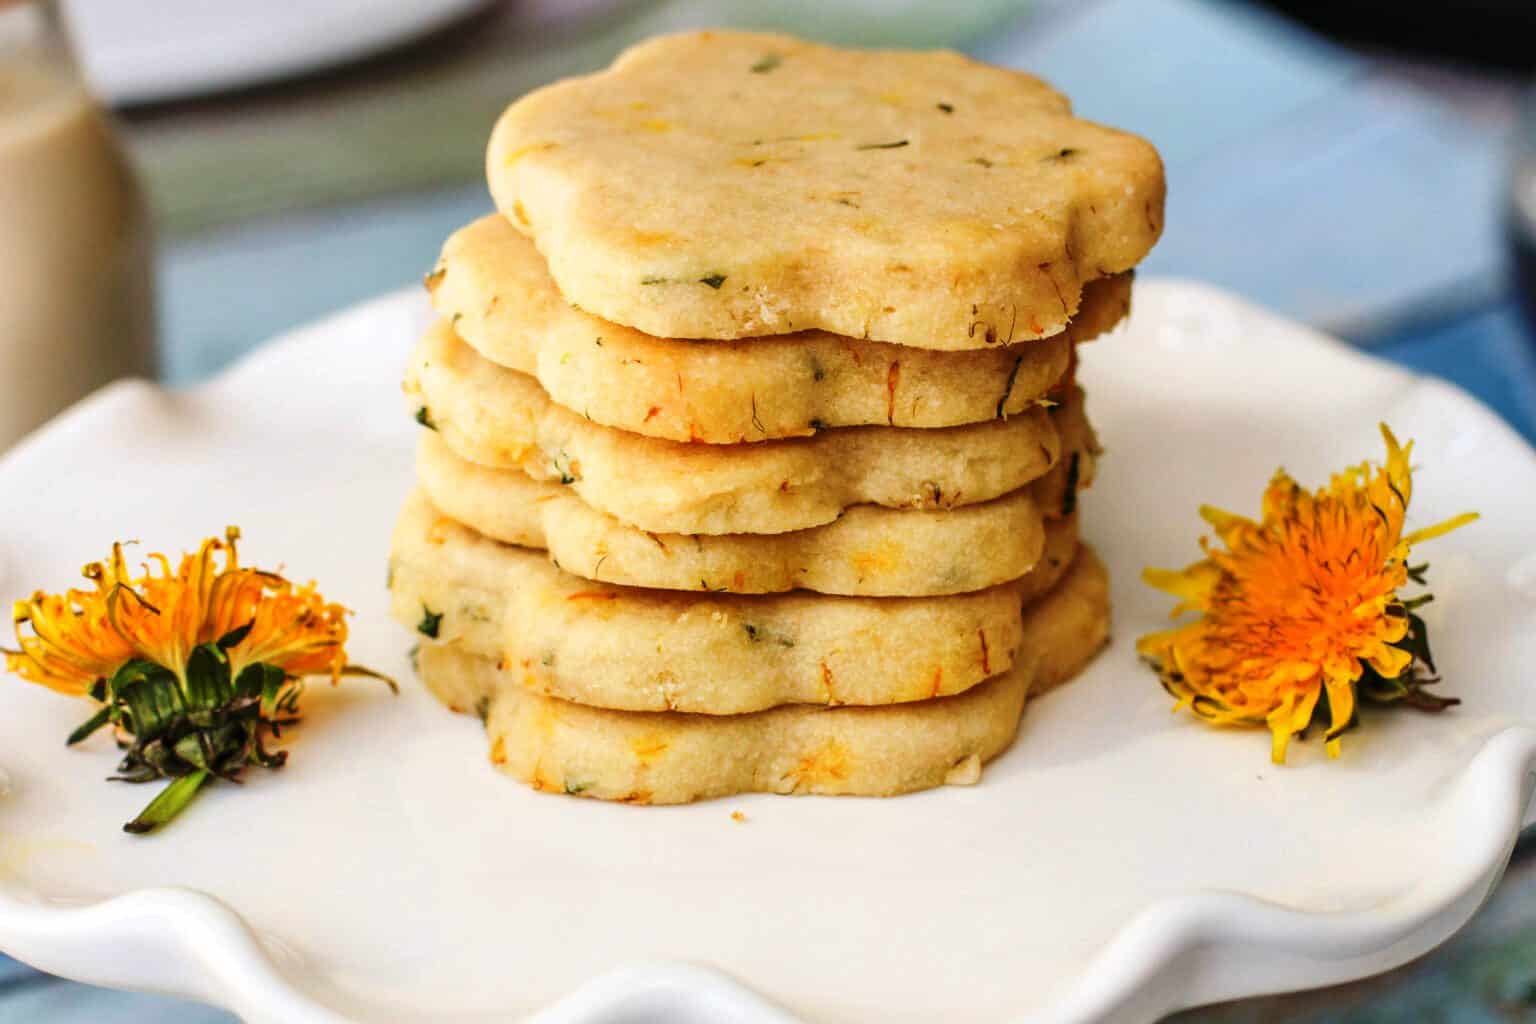 #SusanCooksVegan: How To Make Dandelion Vegan Shortbread Cookies